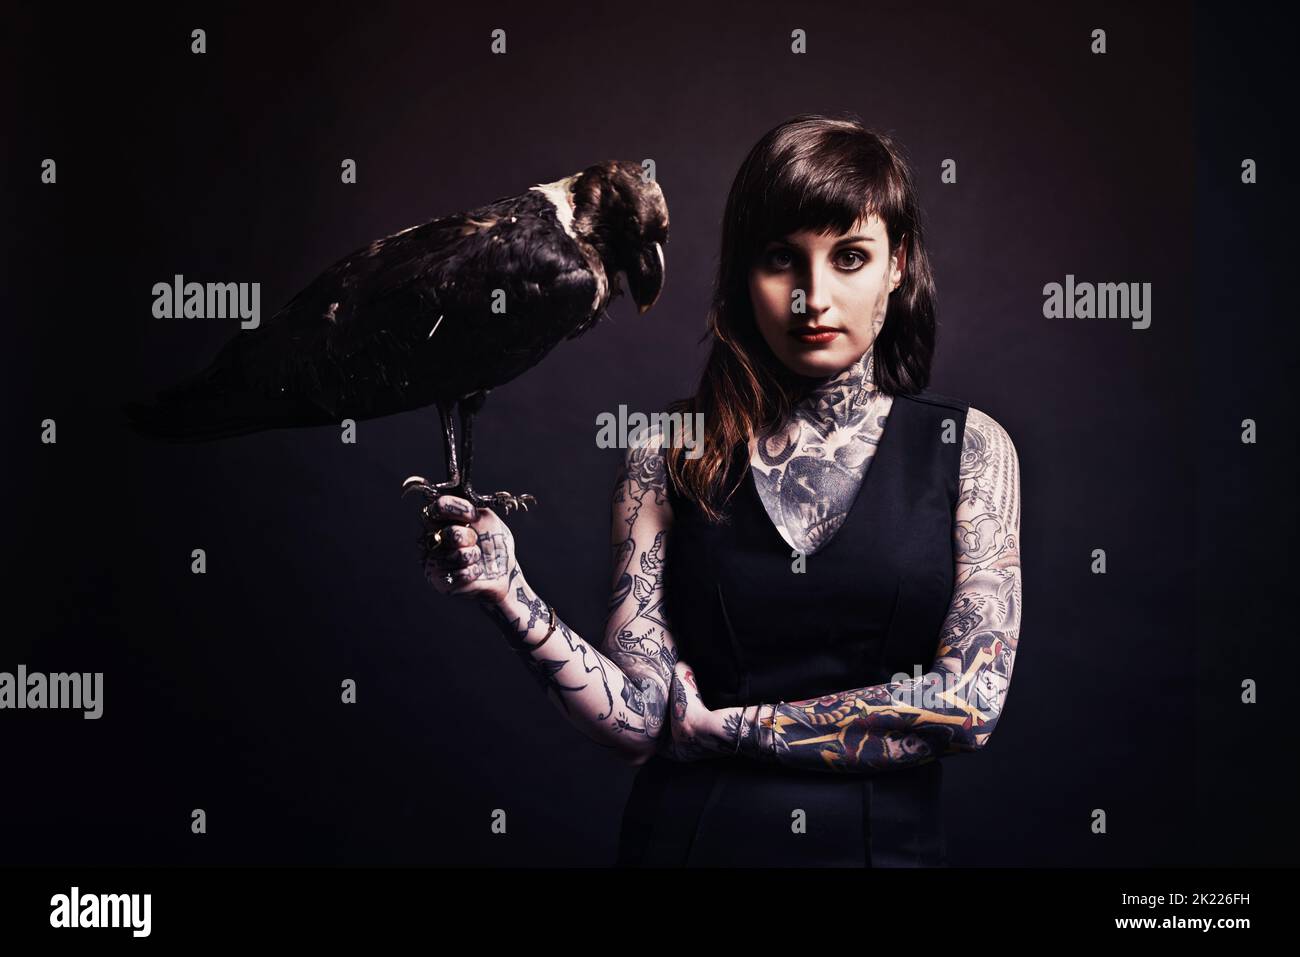 Femme fatale. Photo studio d'une jeune femme tatouée tenant un oiseau Banque D'Images